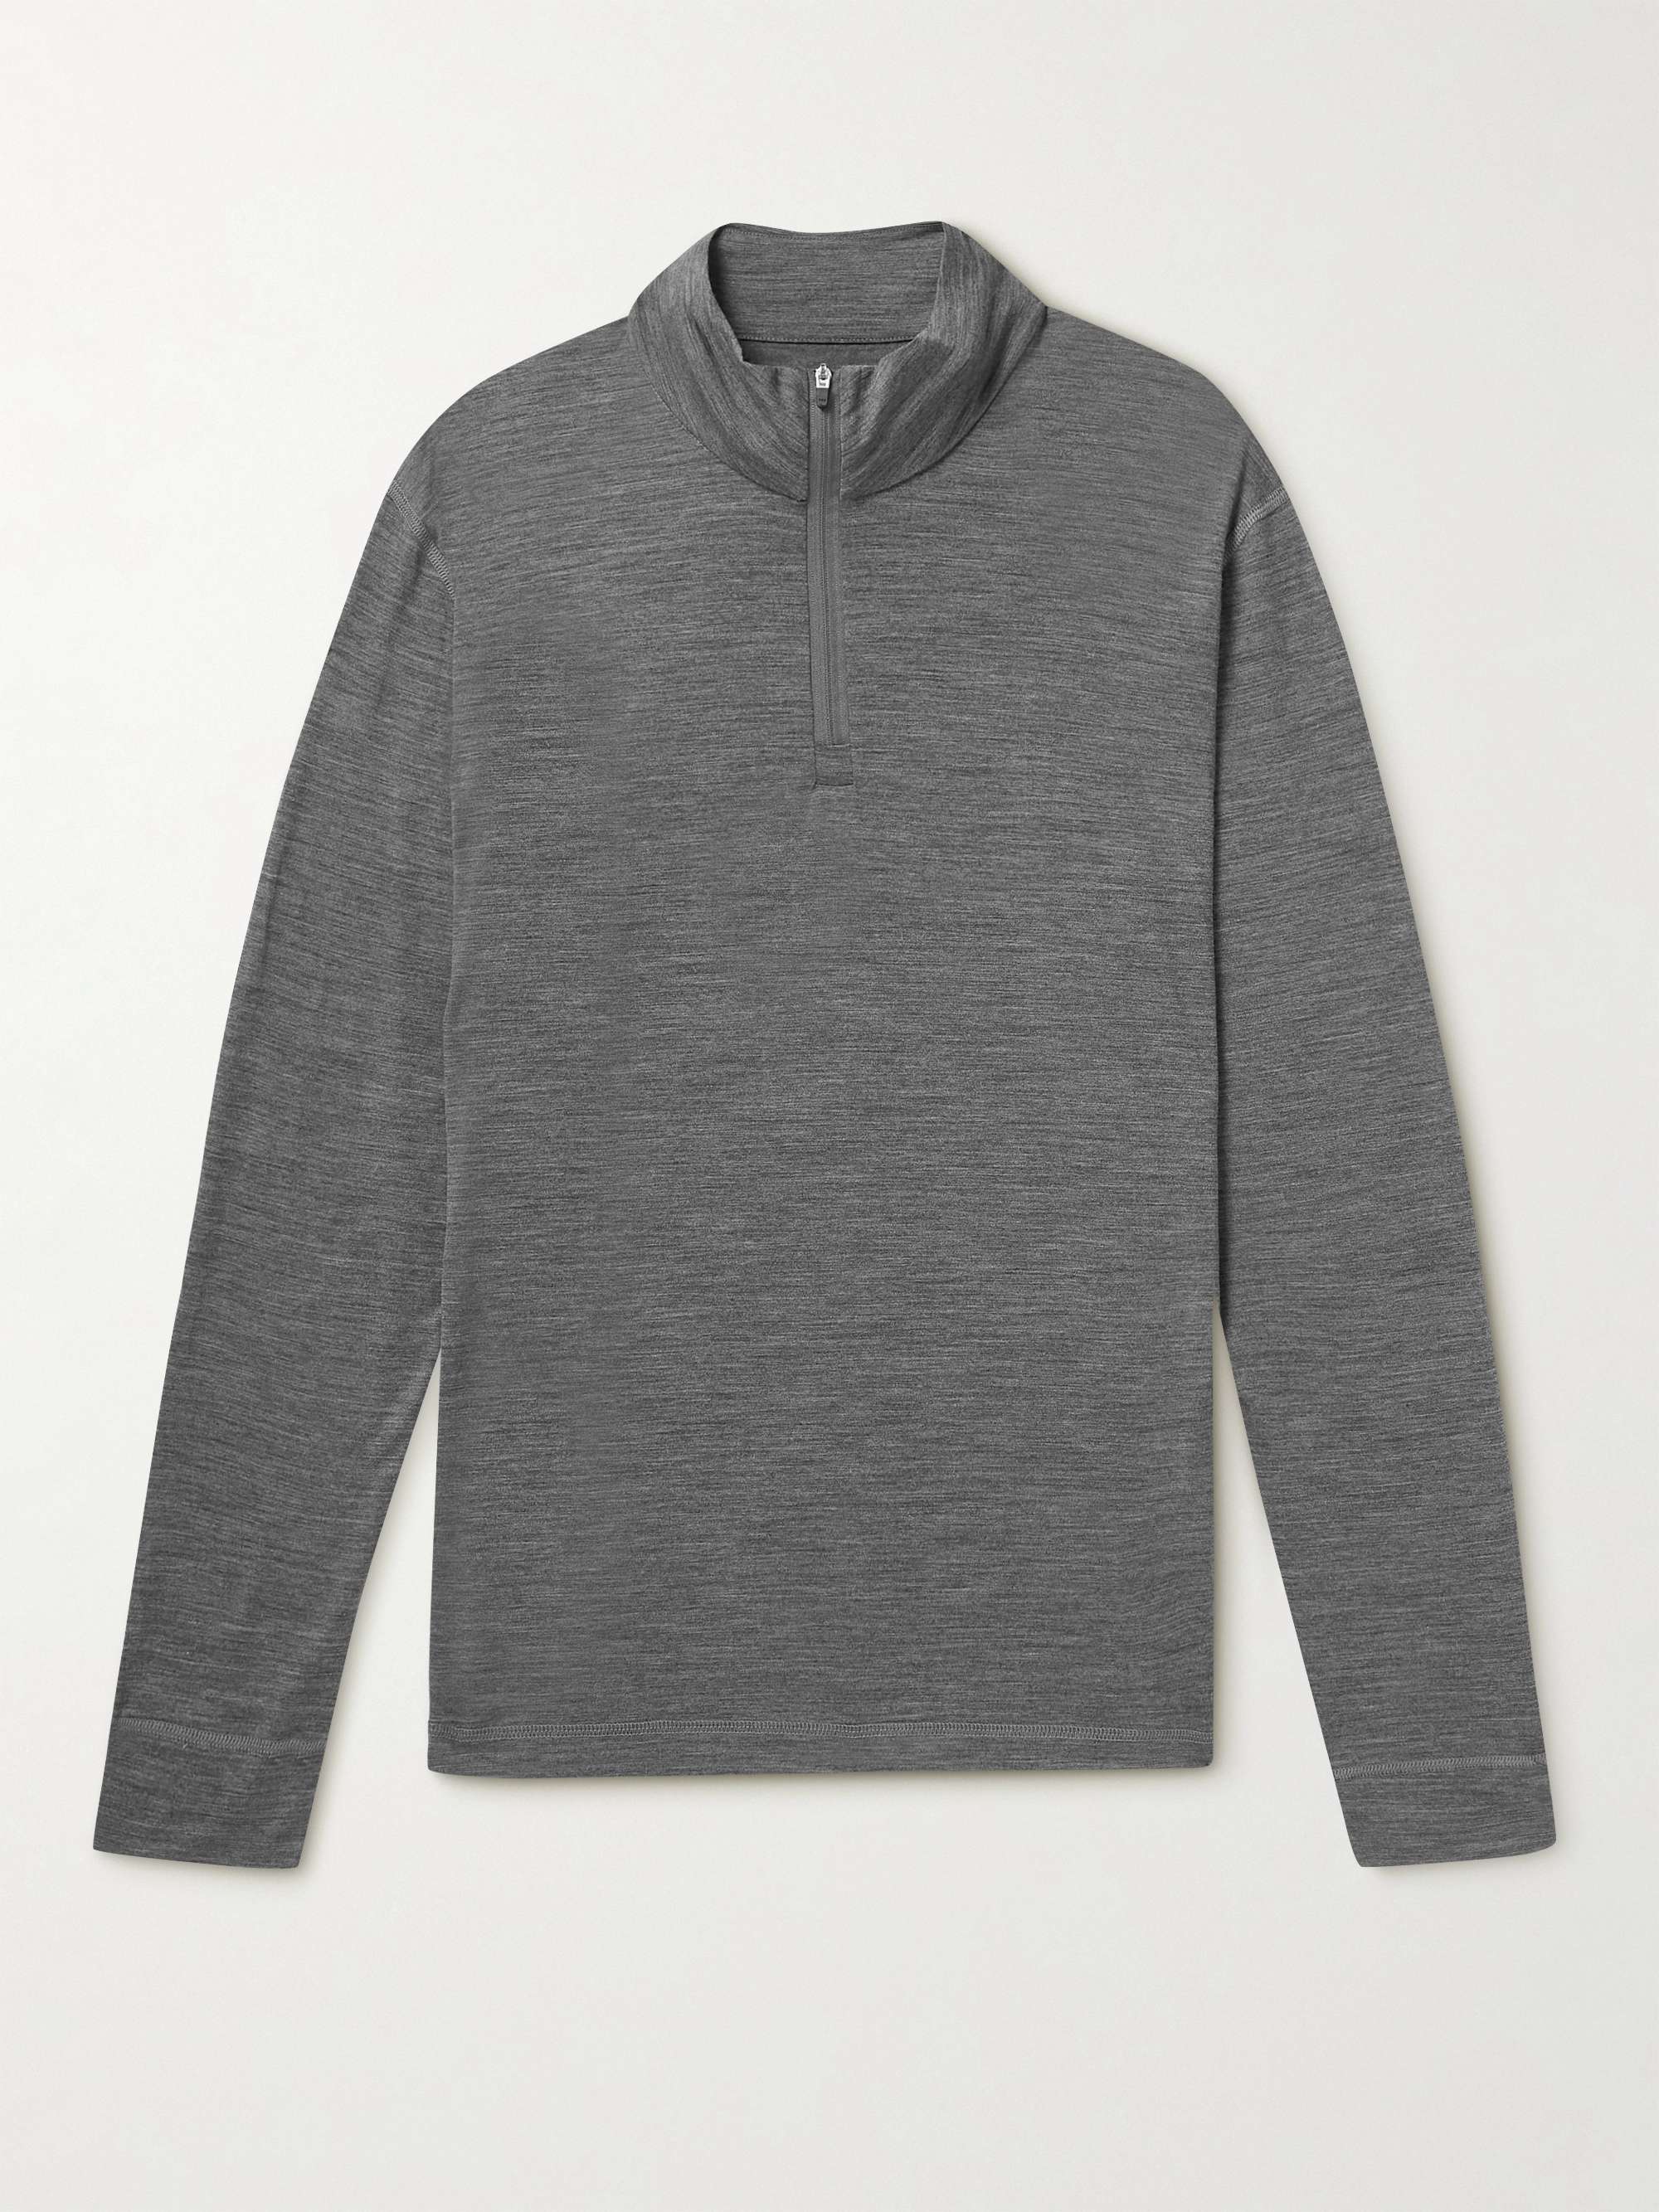 SUNSPEL Merino Wool Half-Zip Sweatshirt for Men | MR PORTER